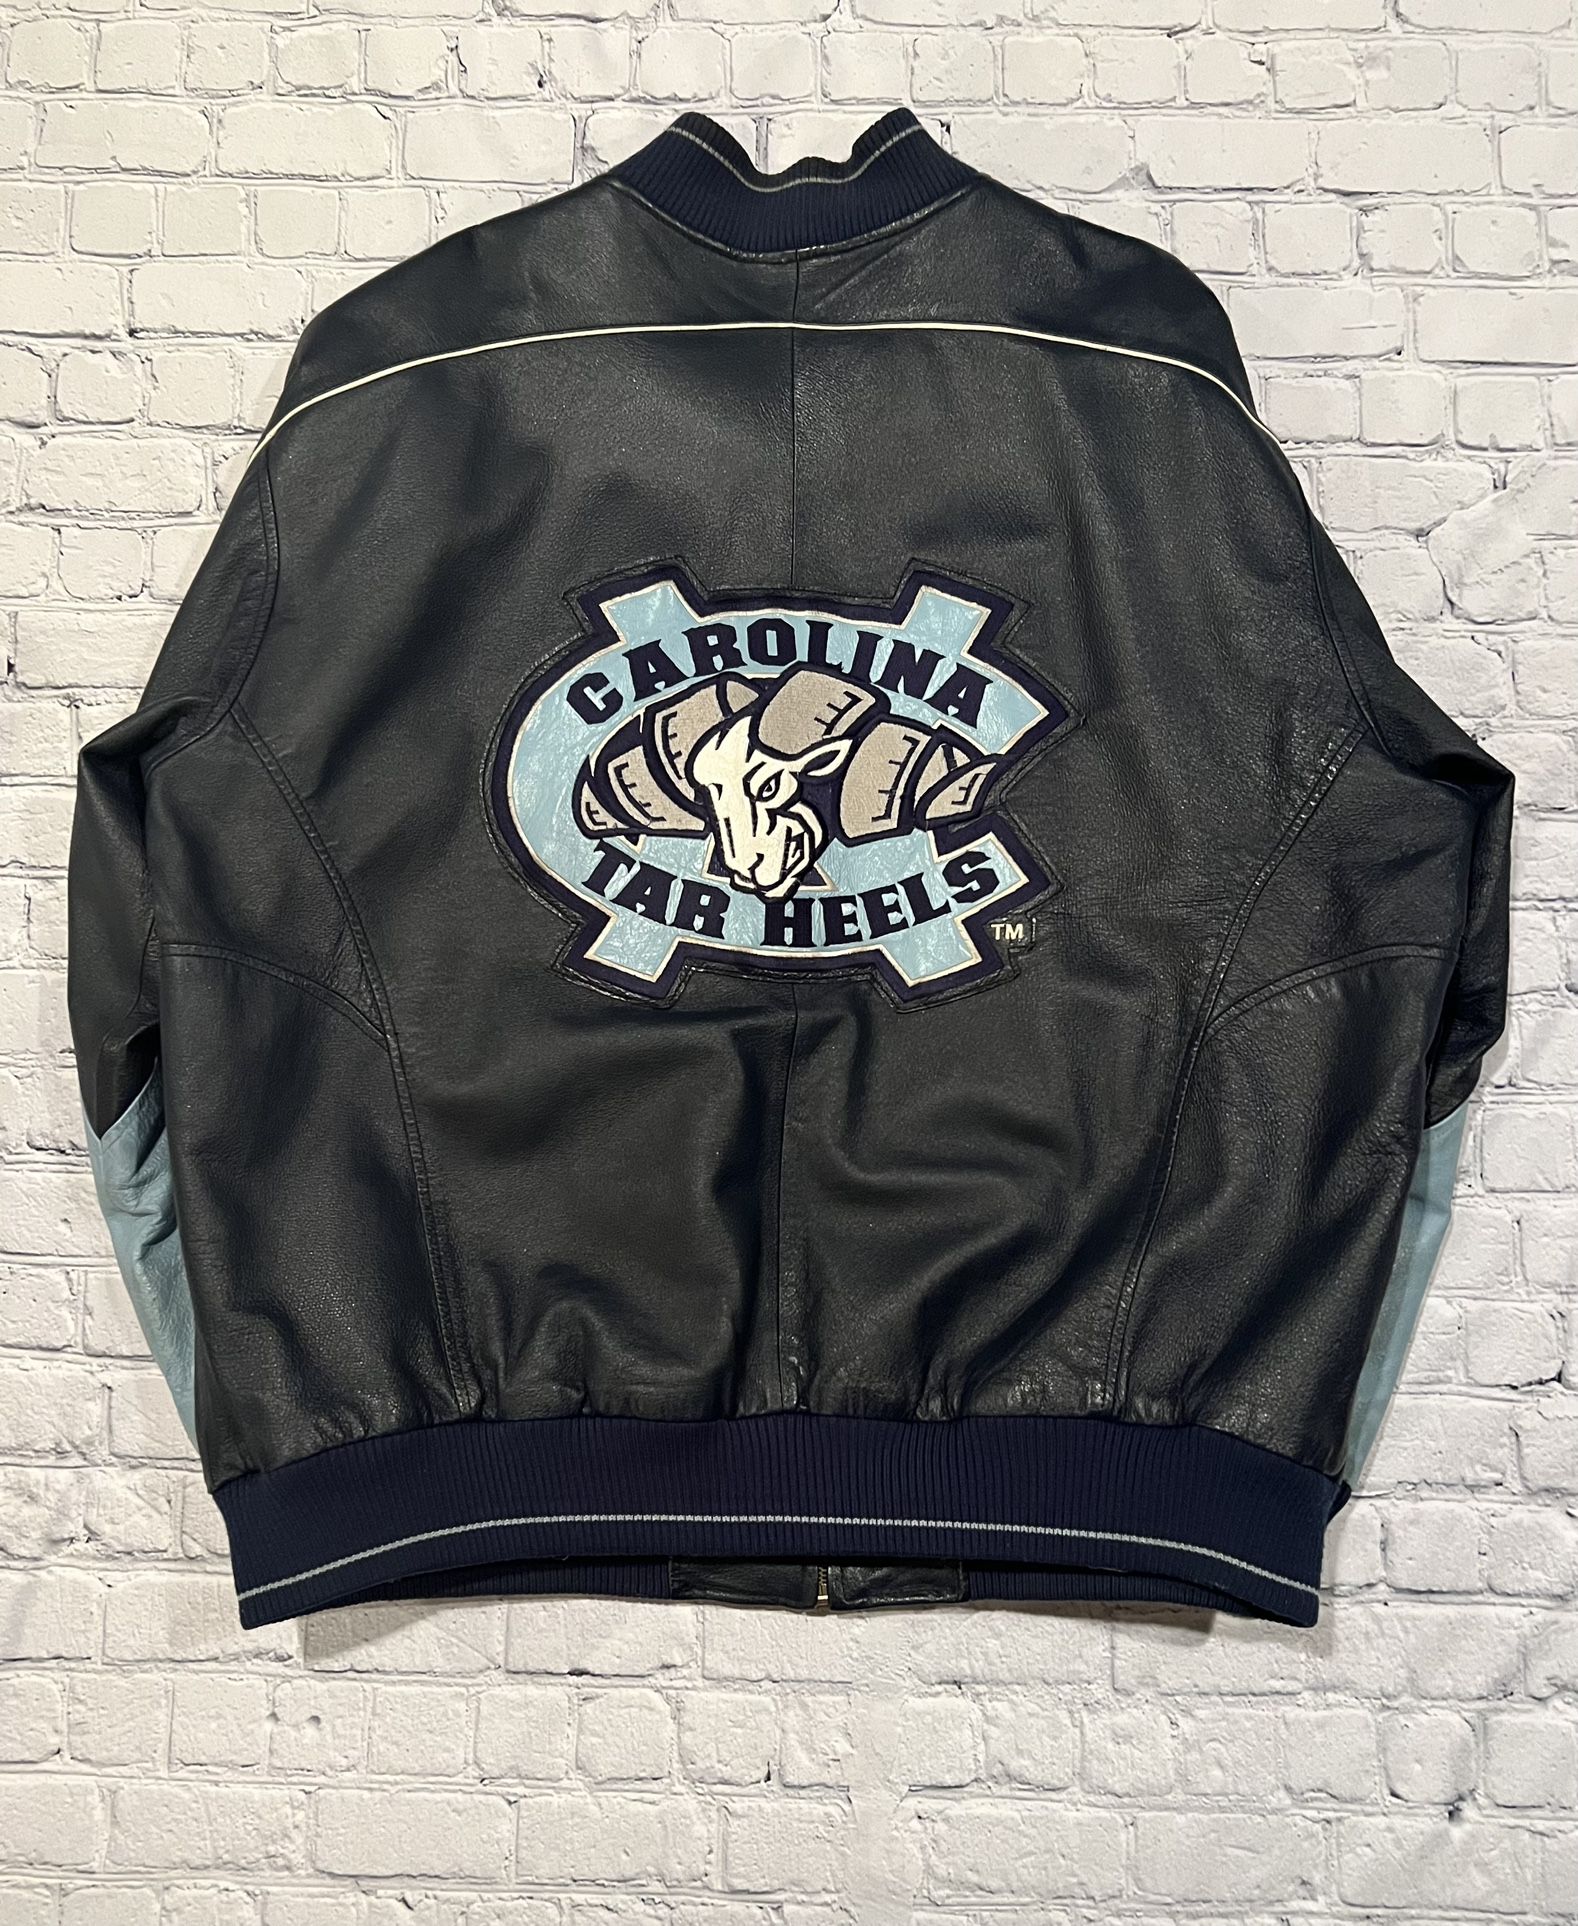 Vintage North Carolina Tarheels XL Leather Jacket